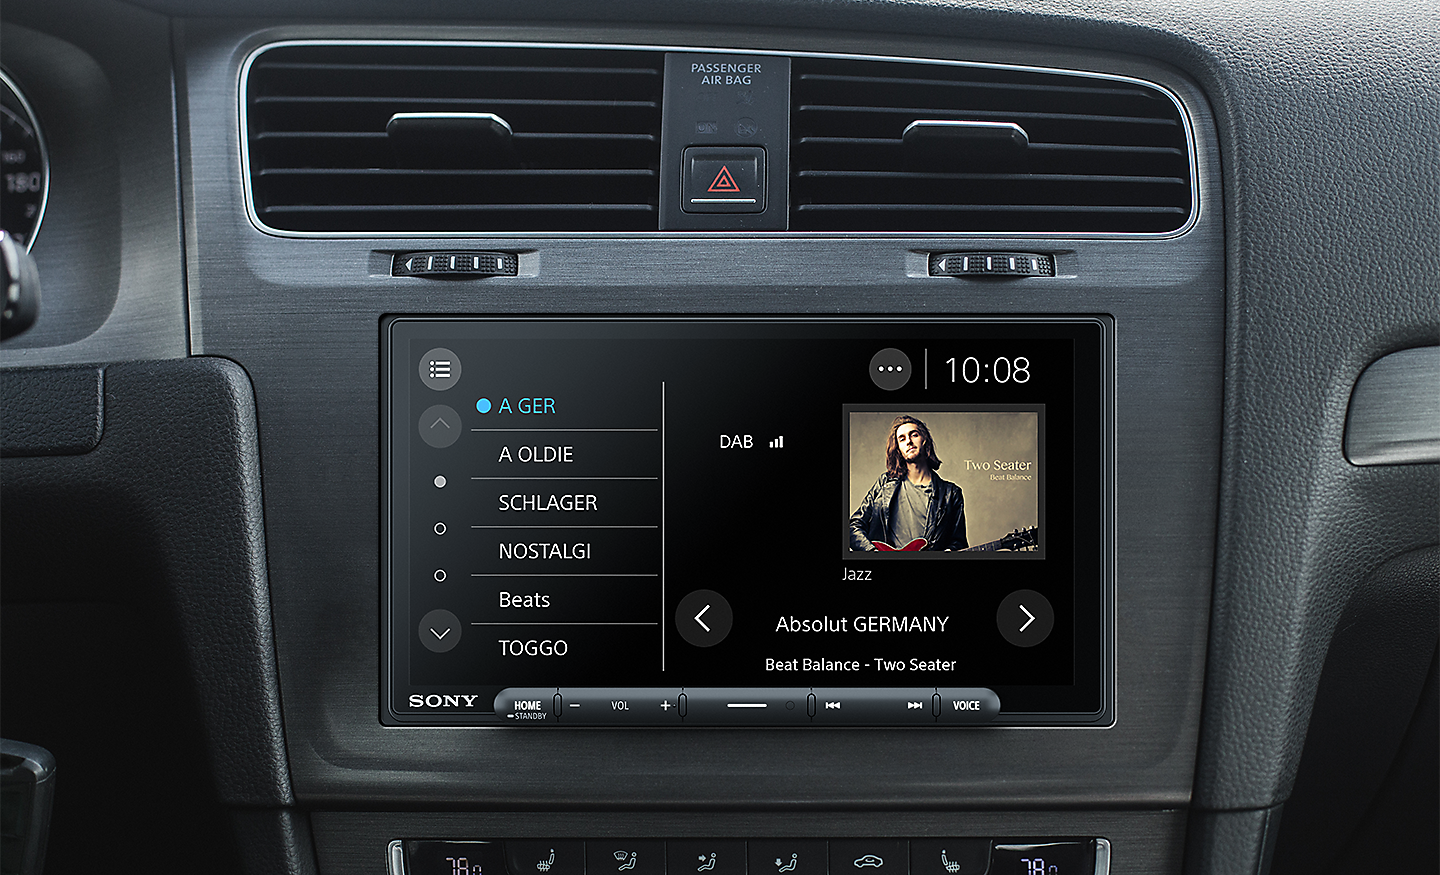 Nuotrauka – XAV-AX6050 prietaisų skydelyje, ekrane matoma DAB radijo sąsaja.